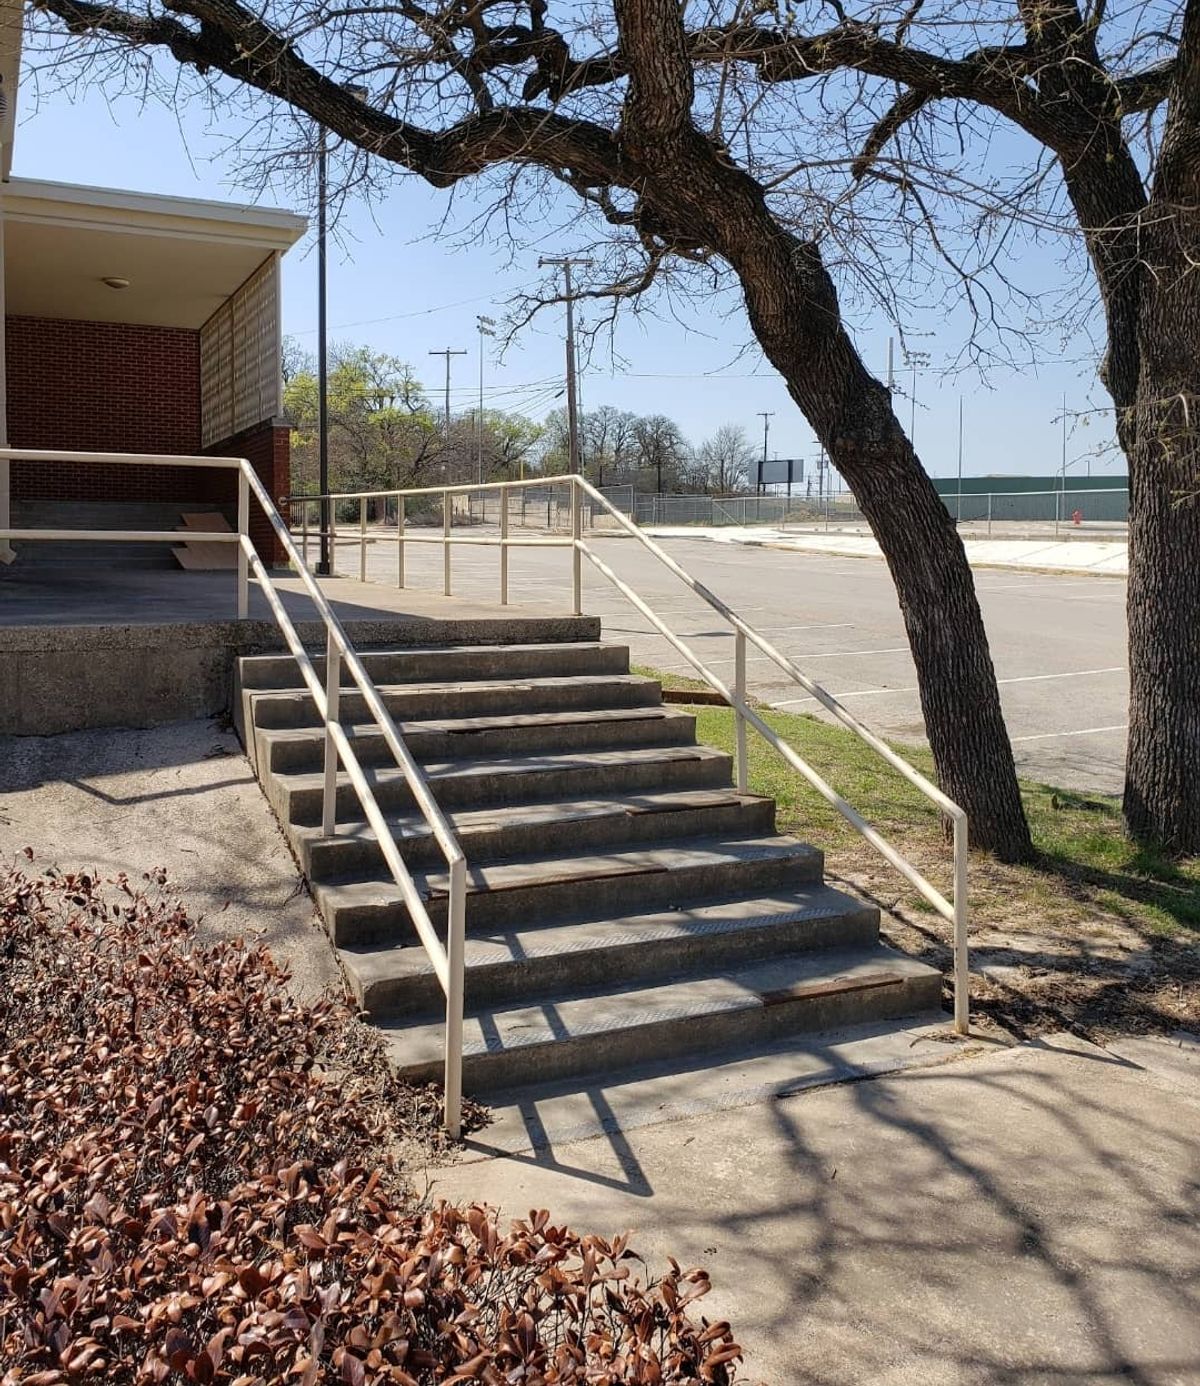 Image for skate spot Eastern Hills Elementary School - 9 Stair Rail